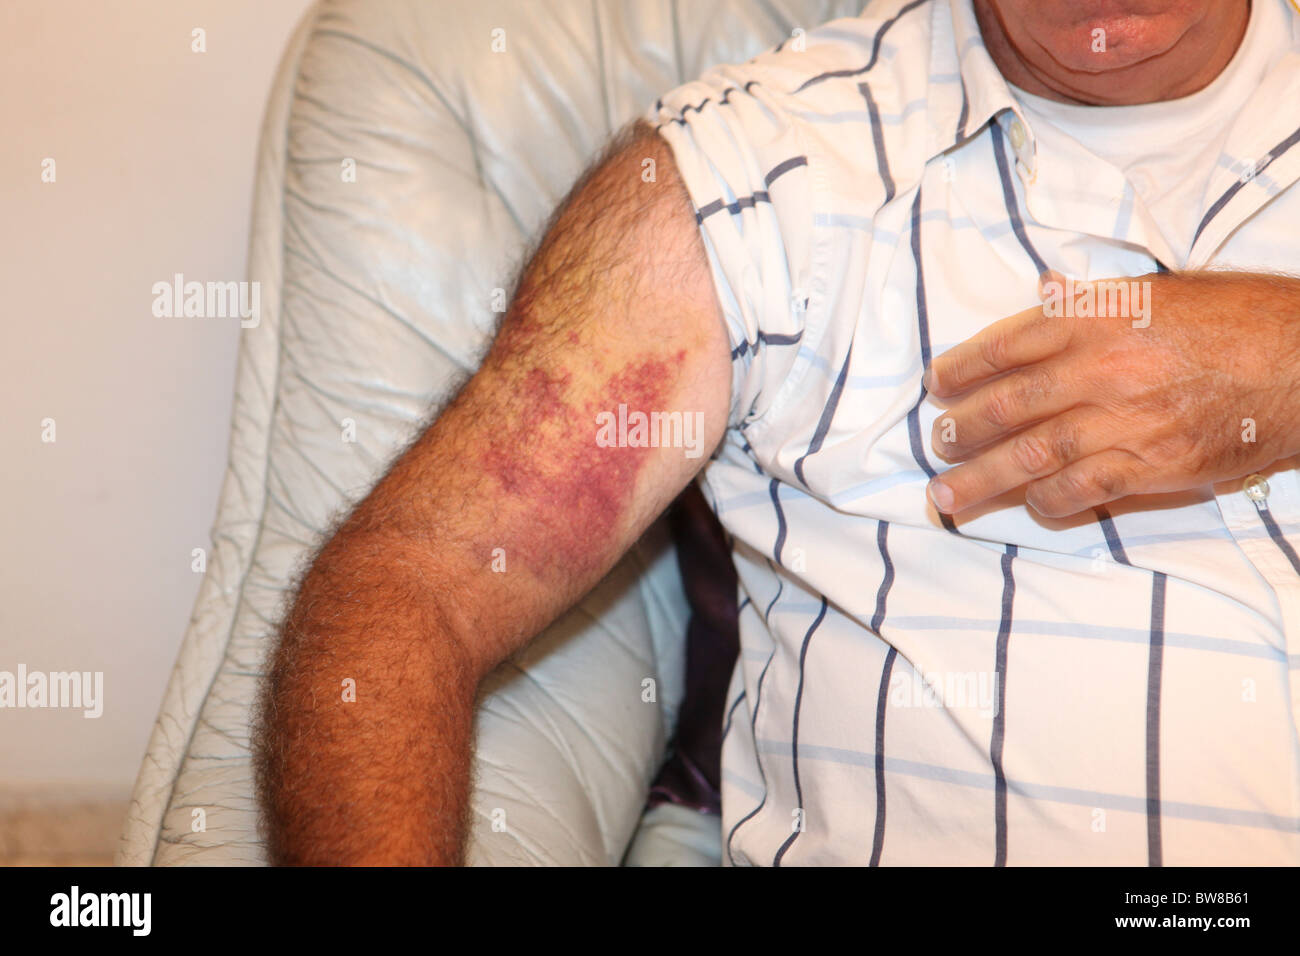 Erysipel an einem Arm. Nahaufnahme der geschwollenen & entzündete Haut eines jungen Mannes. Stockfoto